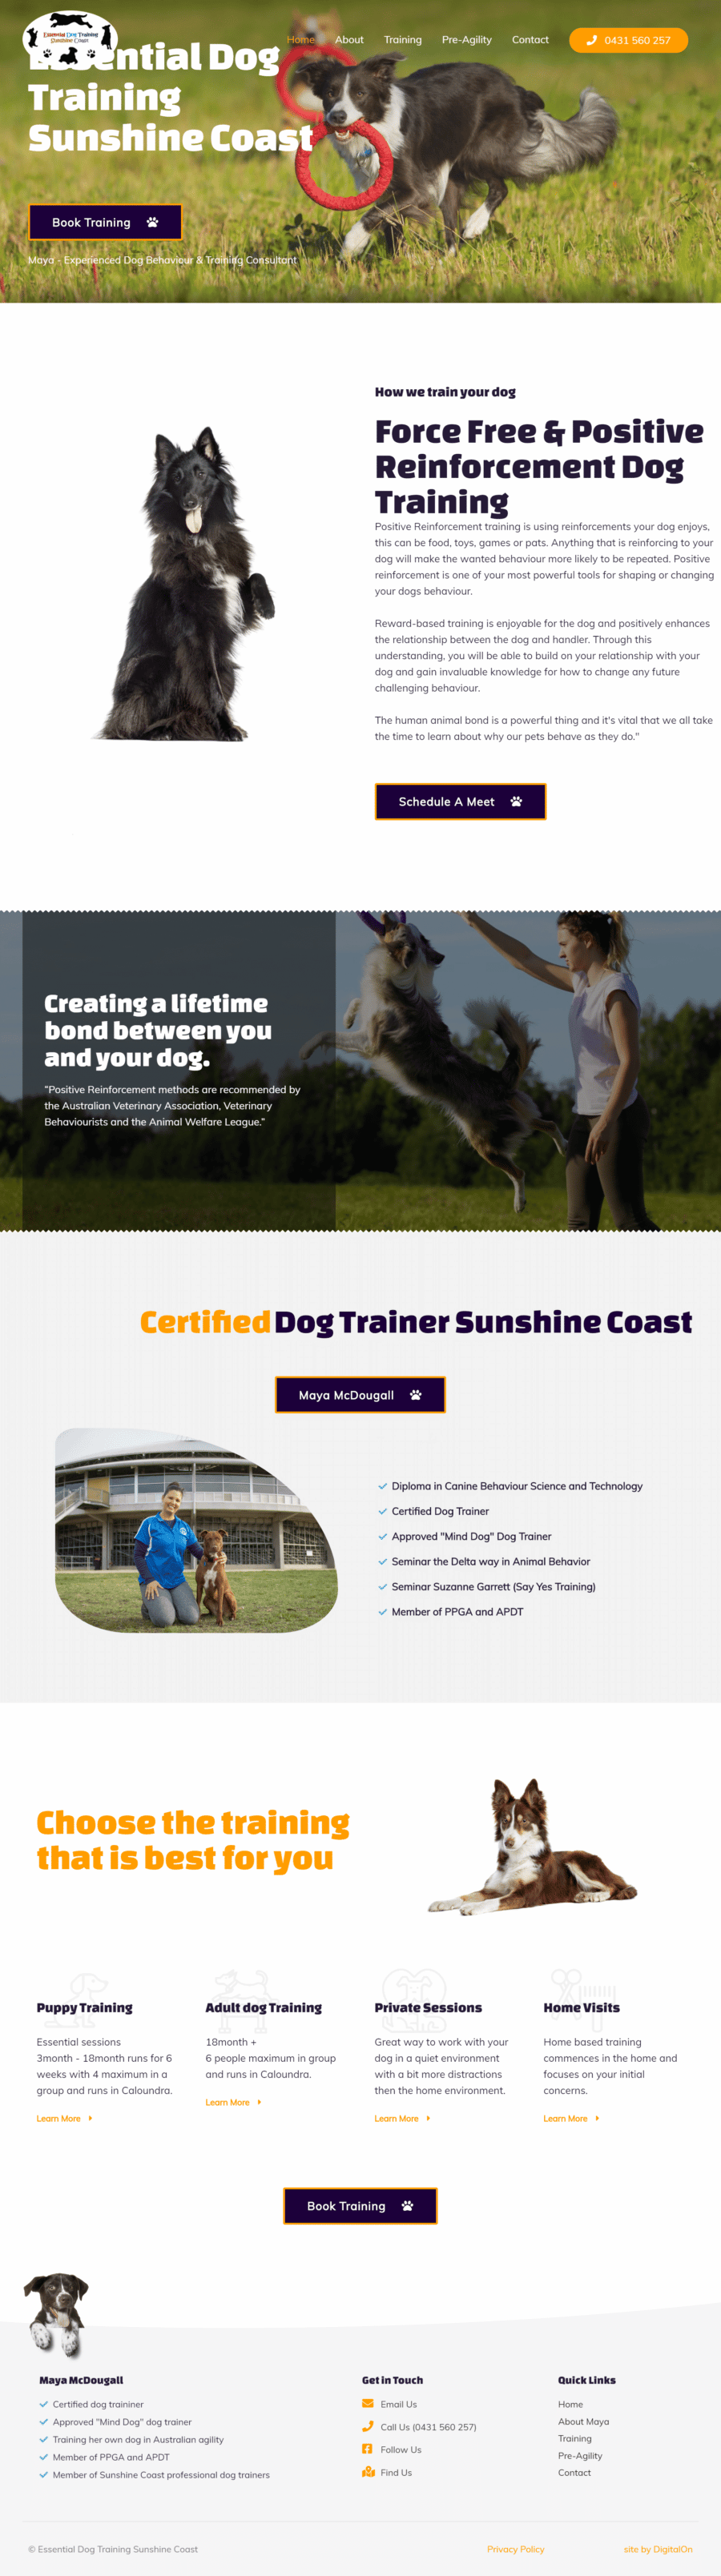 Essential Dog Training Home page digitalon web design portfolio